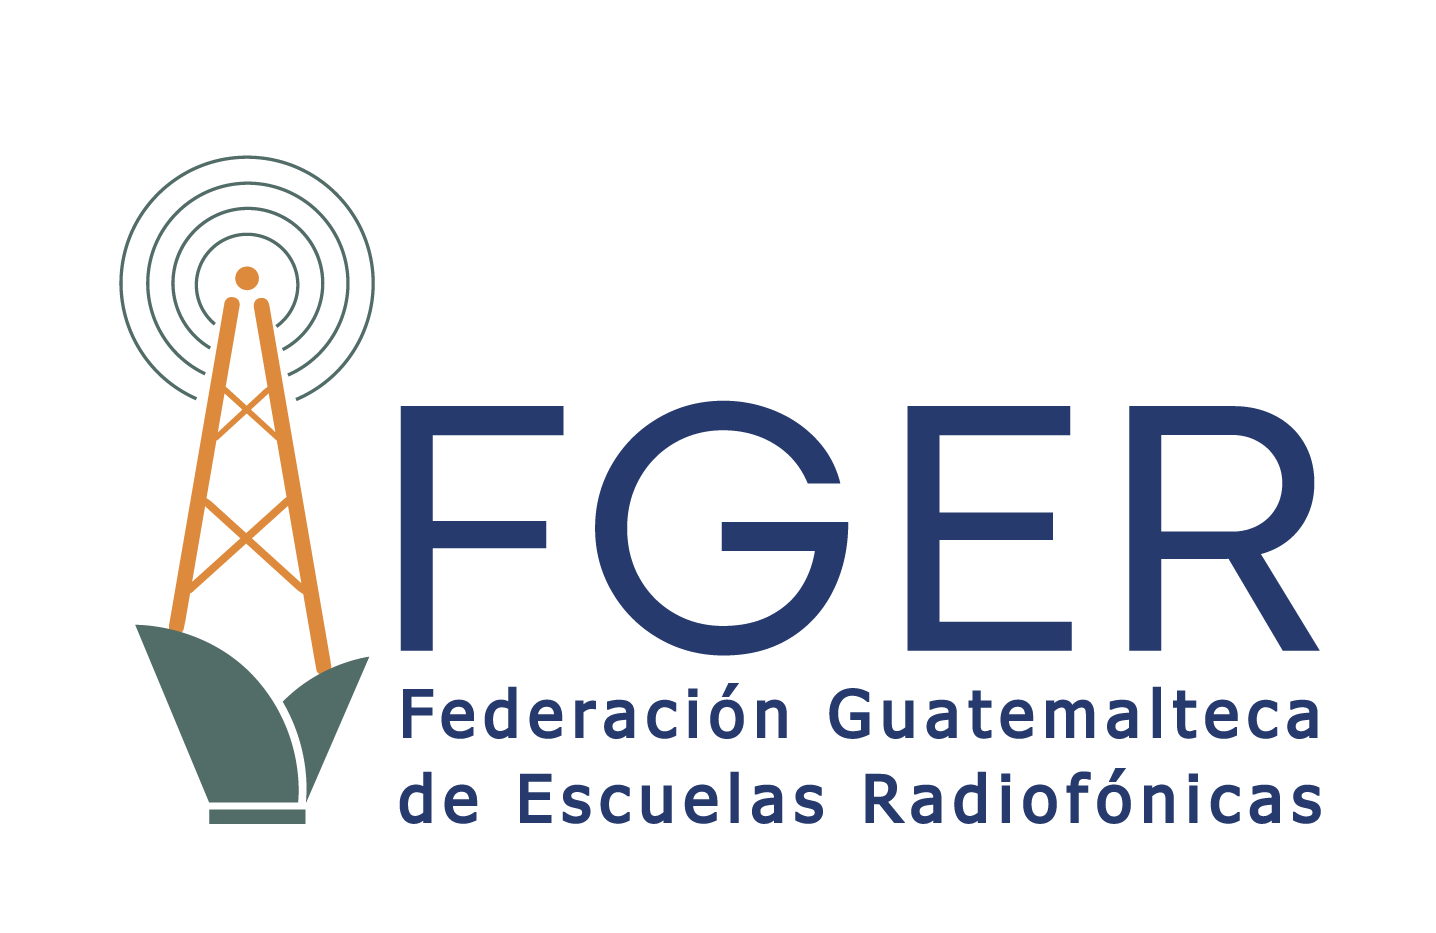 (c) Fger.org